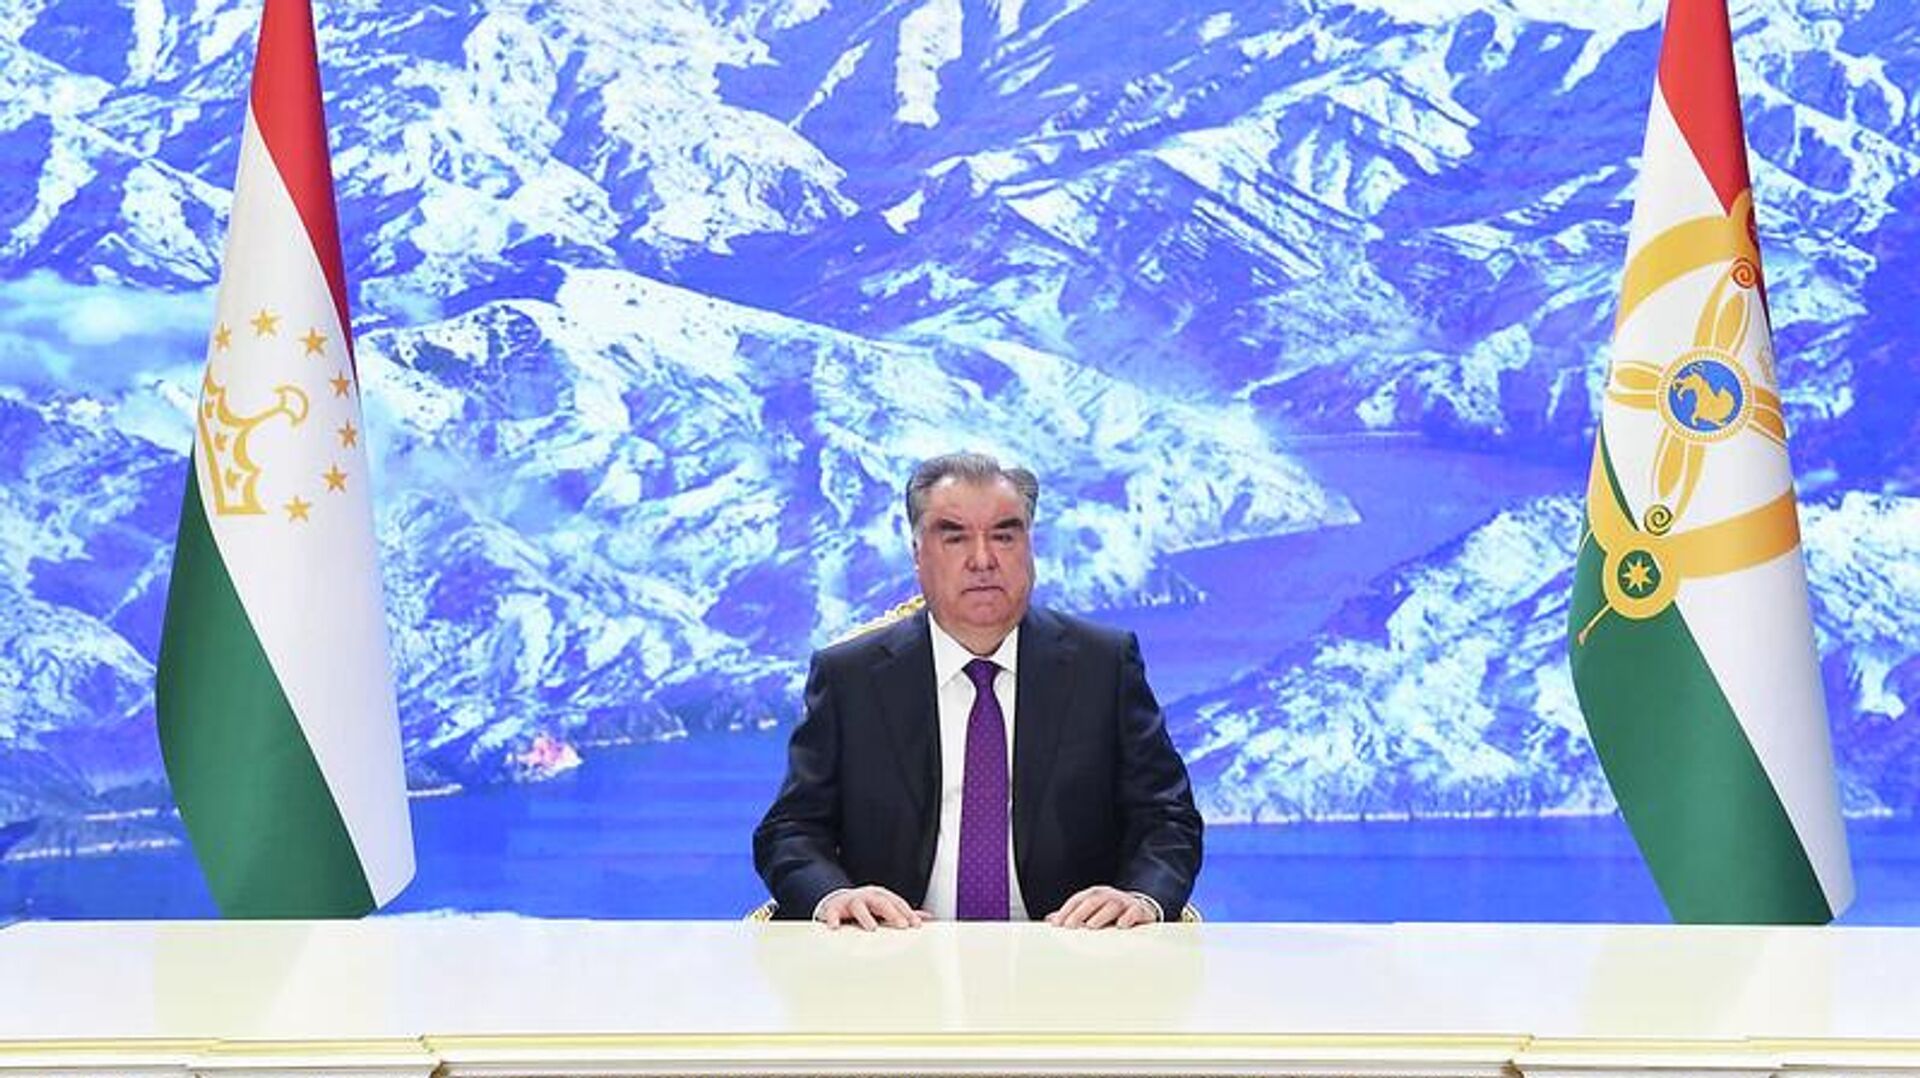 Президент Таджикистана Эмомали Рахмон выступил на церемонии открытия четвертого Азиатско-Тихоокеанского водного саммита - Sputnik Тоҷикистон, 1920, 23.04.2022